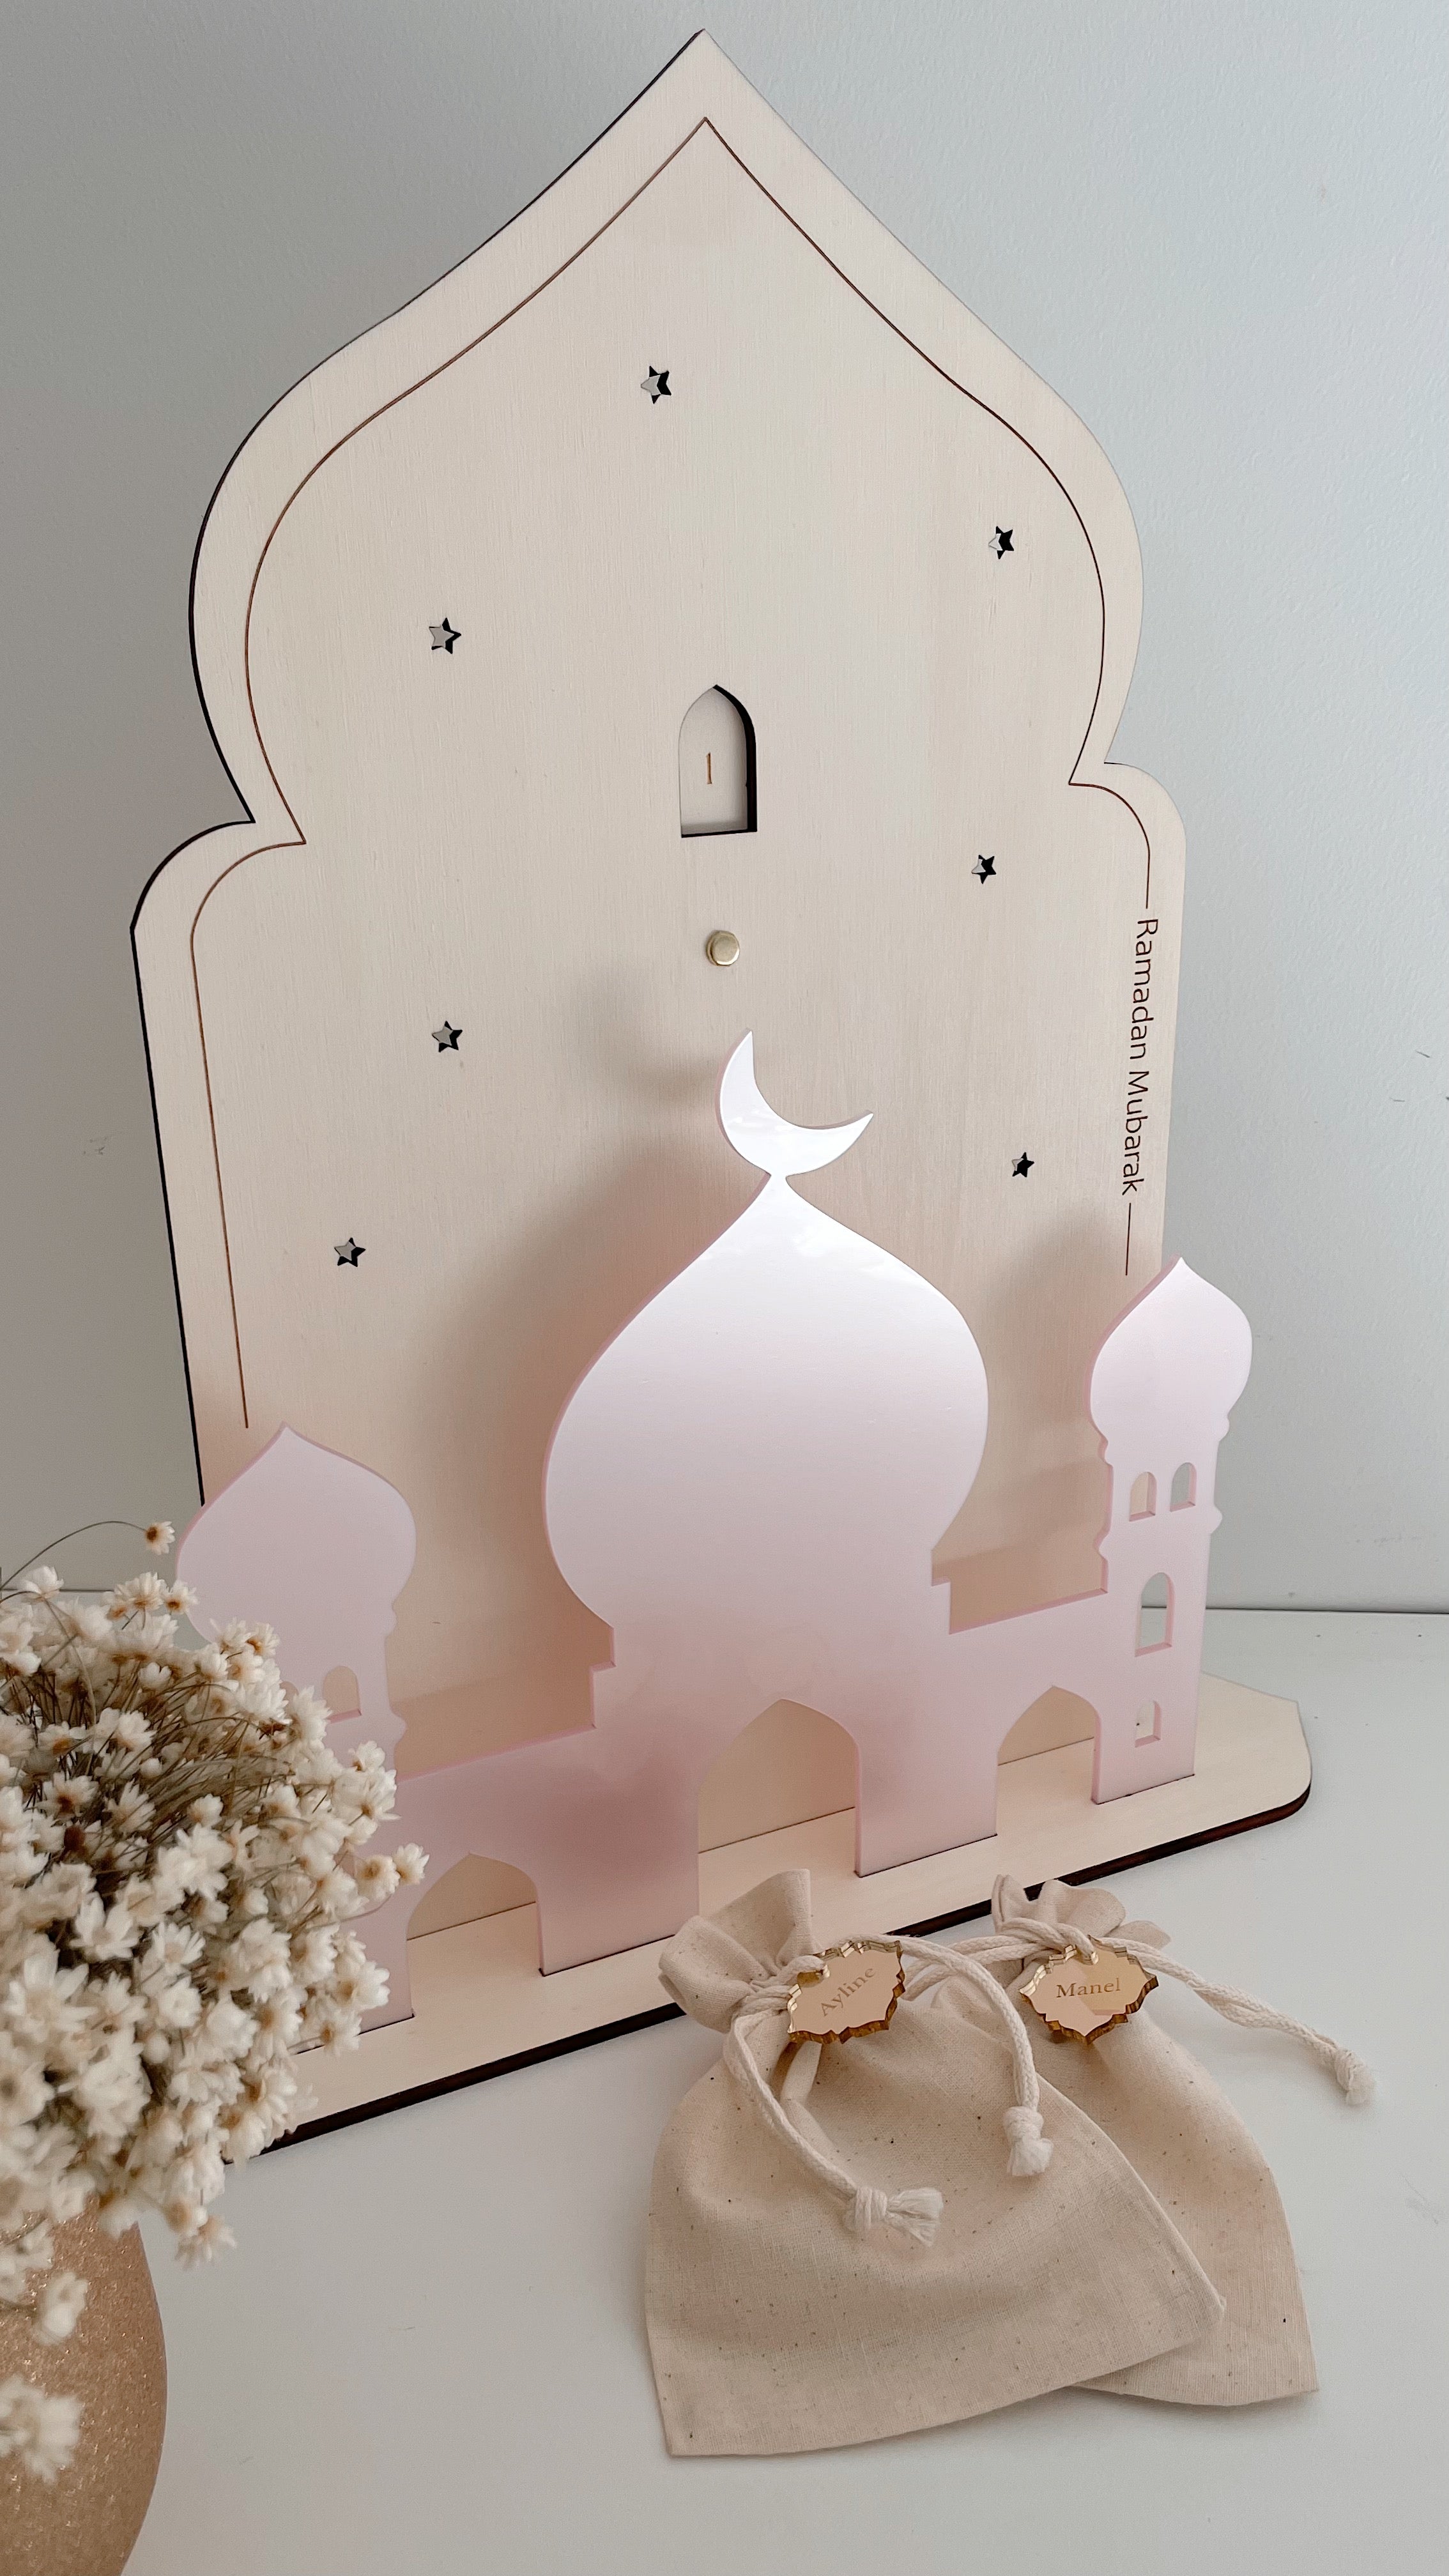 Calendrier du Ramadan pour enfants personnalisé avec nom en sac de jute  gravé sur bois avec chiffres en option Mosquée Ramadan Kareem -  France